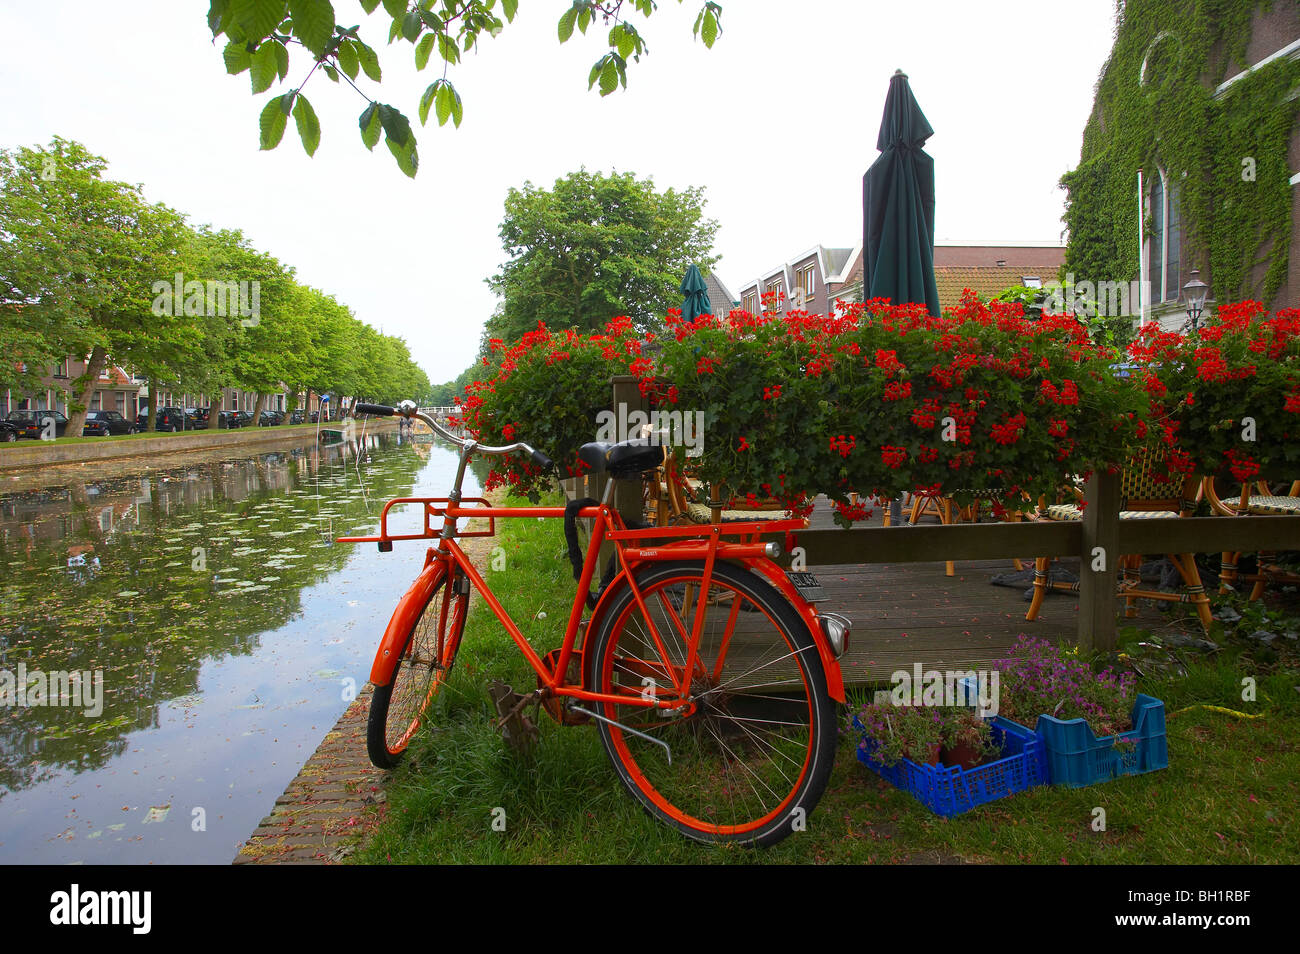 Rosso permanente di biciclette presso le banche di un gracht canal, Weesp, Paesi Bassi, Europa Foto Stock